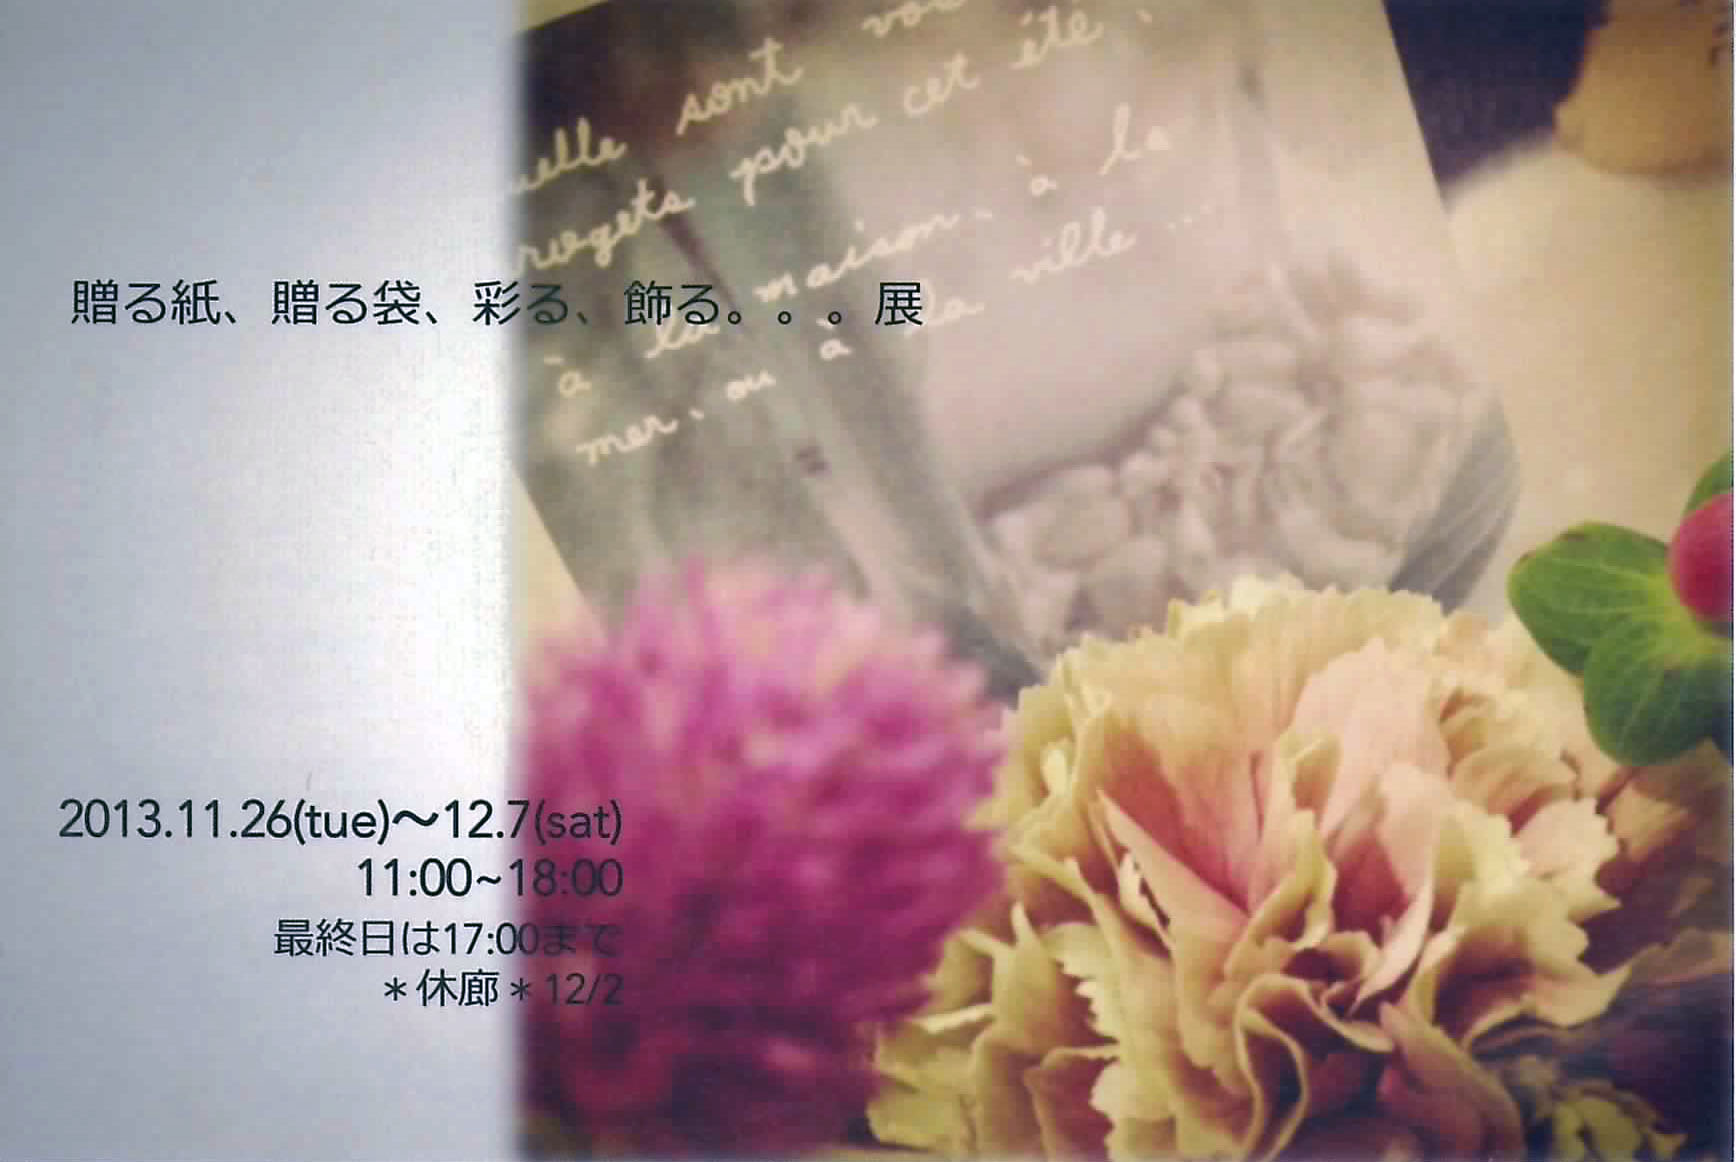 11月26日(火）～12月7日（土）東京・都立大学のGallery KOMPISの『贈る紙、贈る袋、彩る、飾る。。。展』に、アトリエ ハッピー エレファントも出展します。